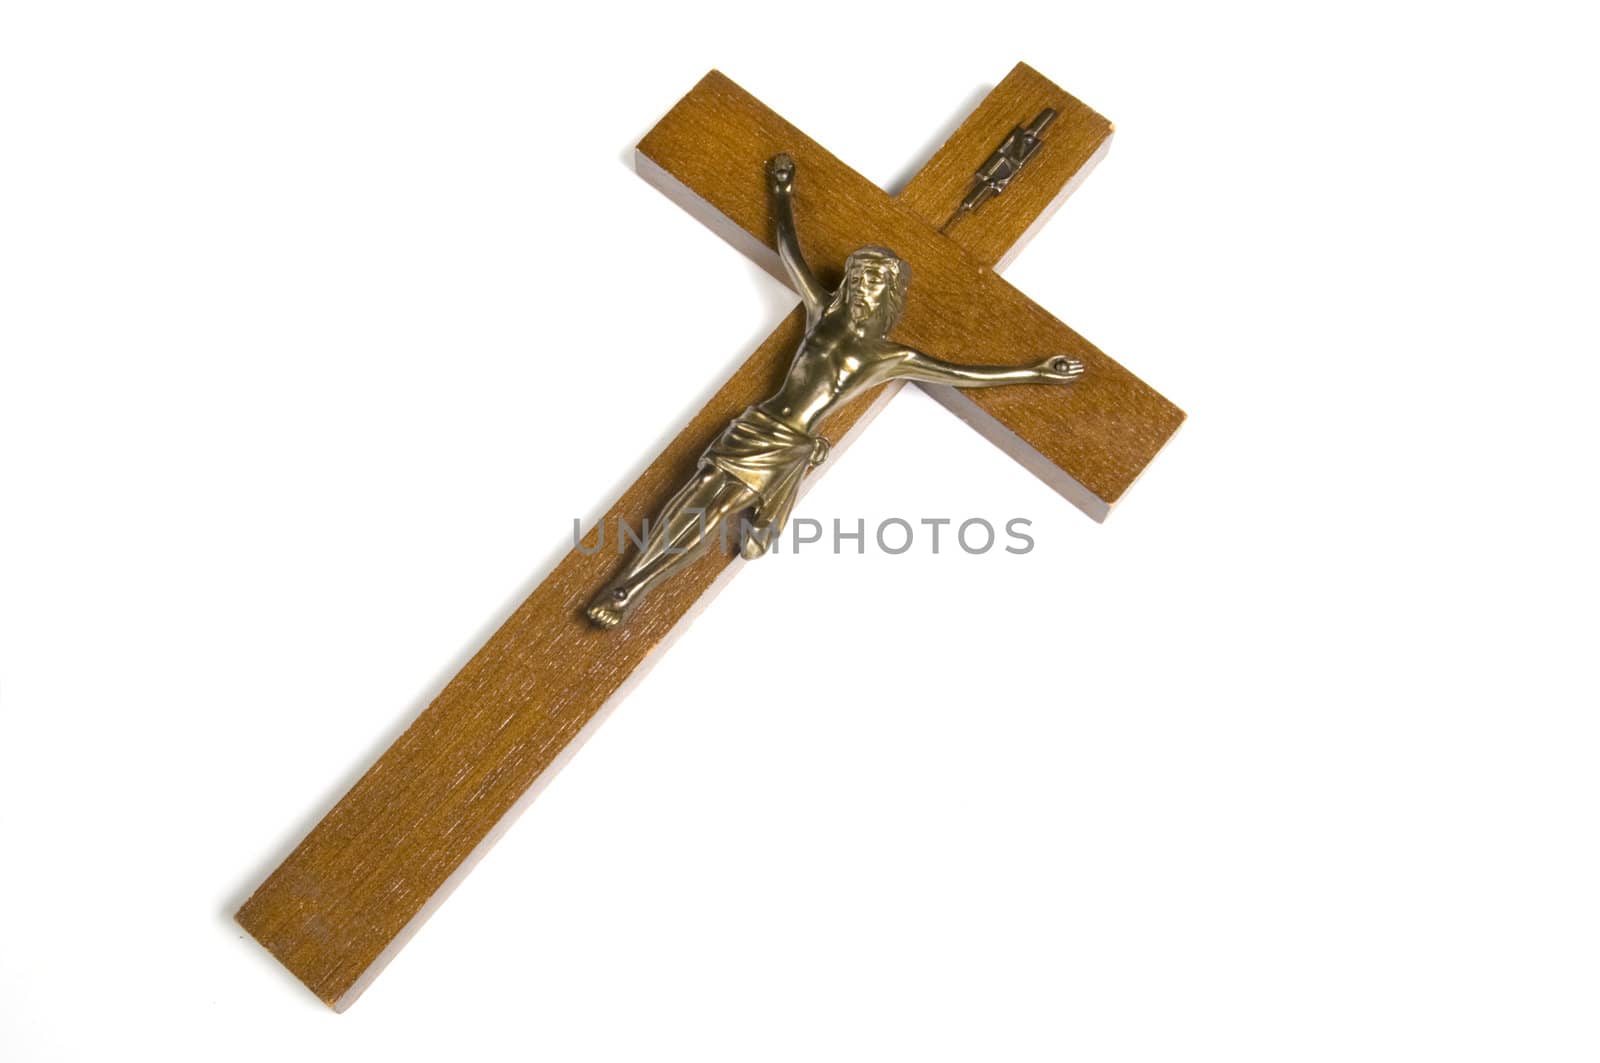 Wooden Cross by Gordo25